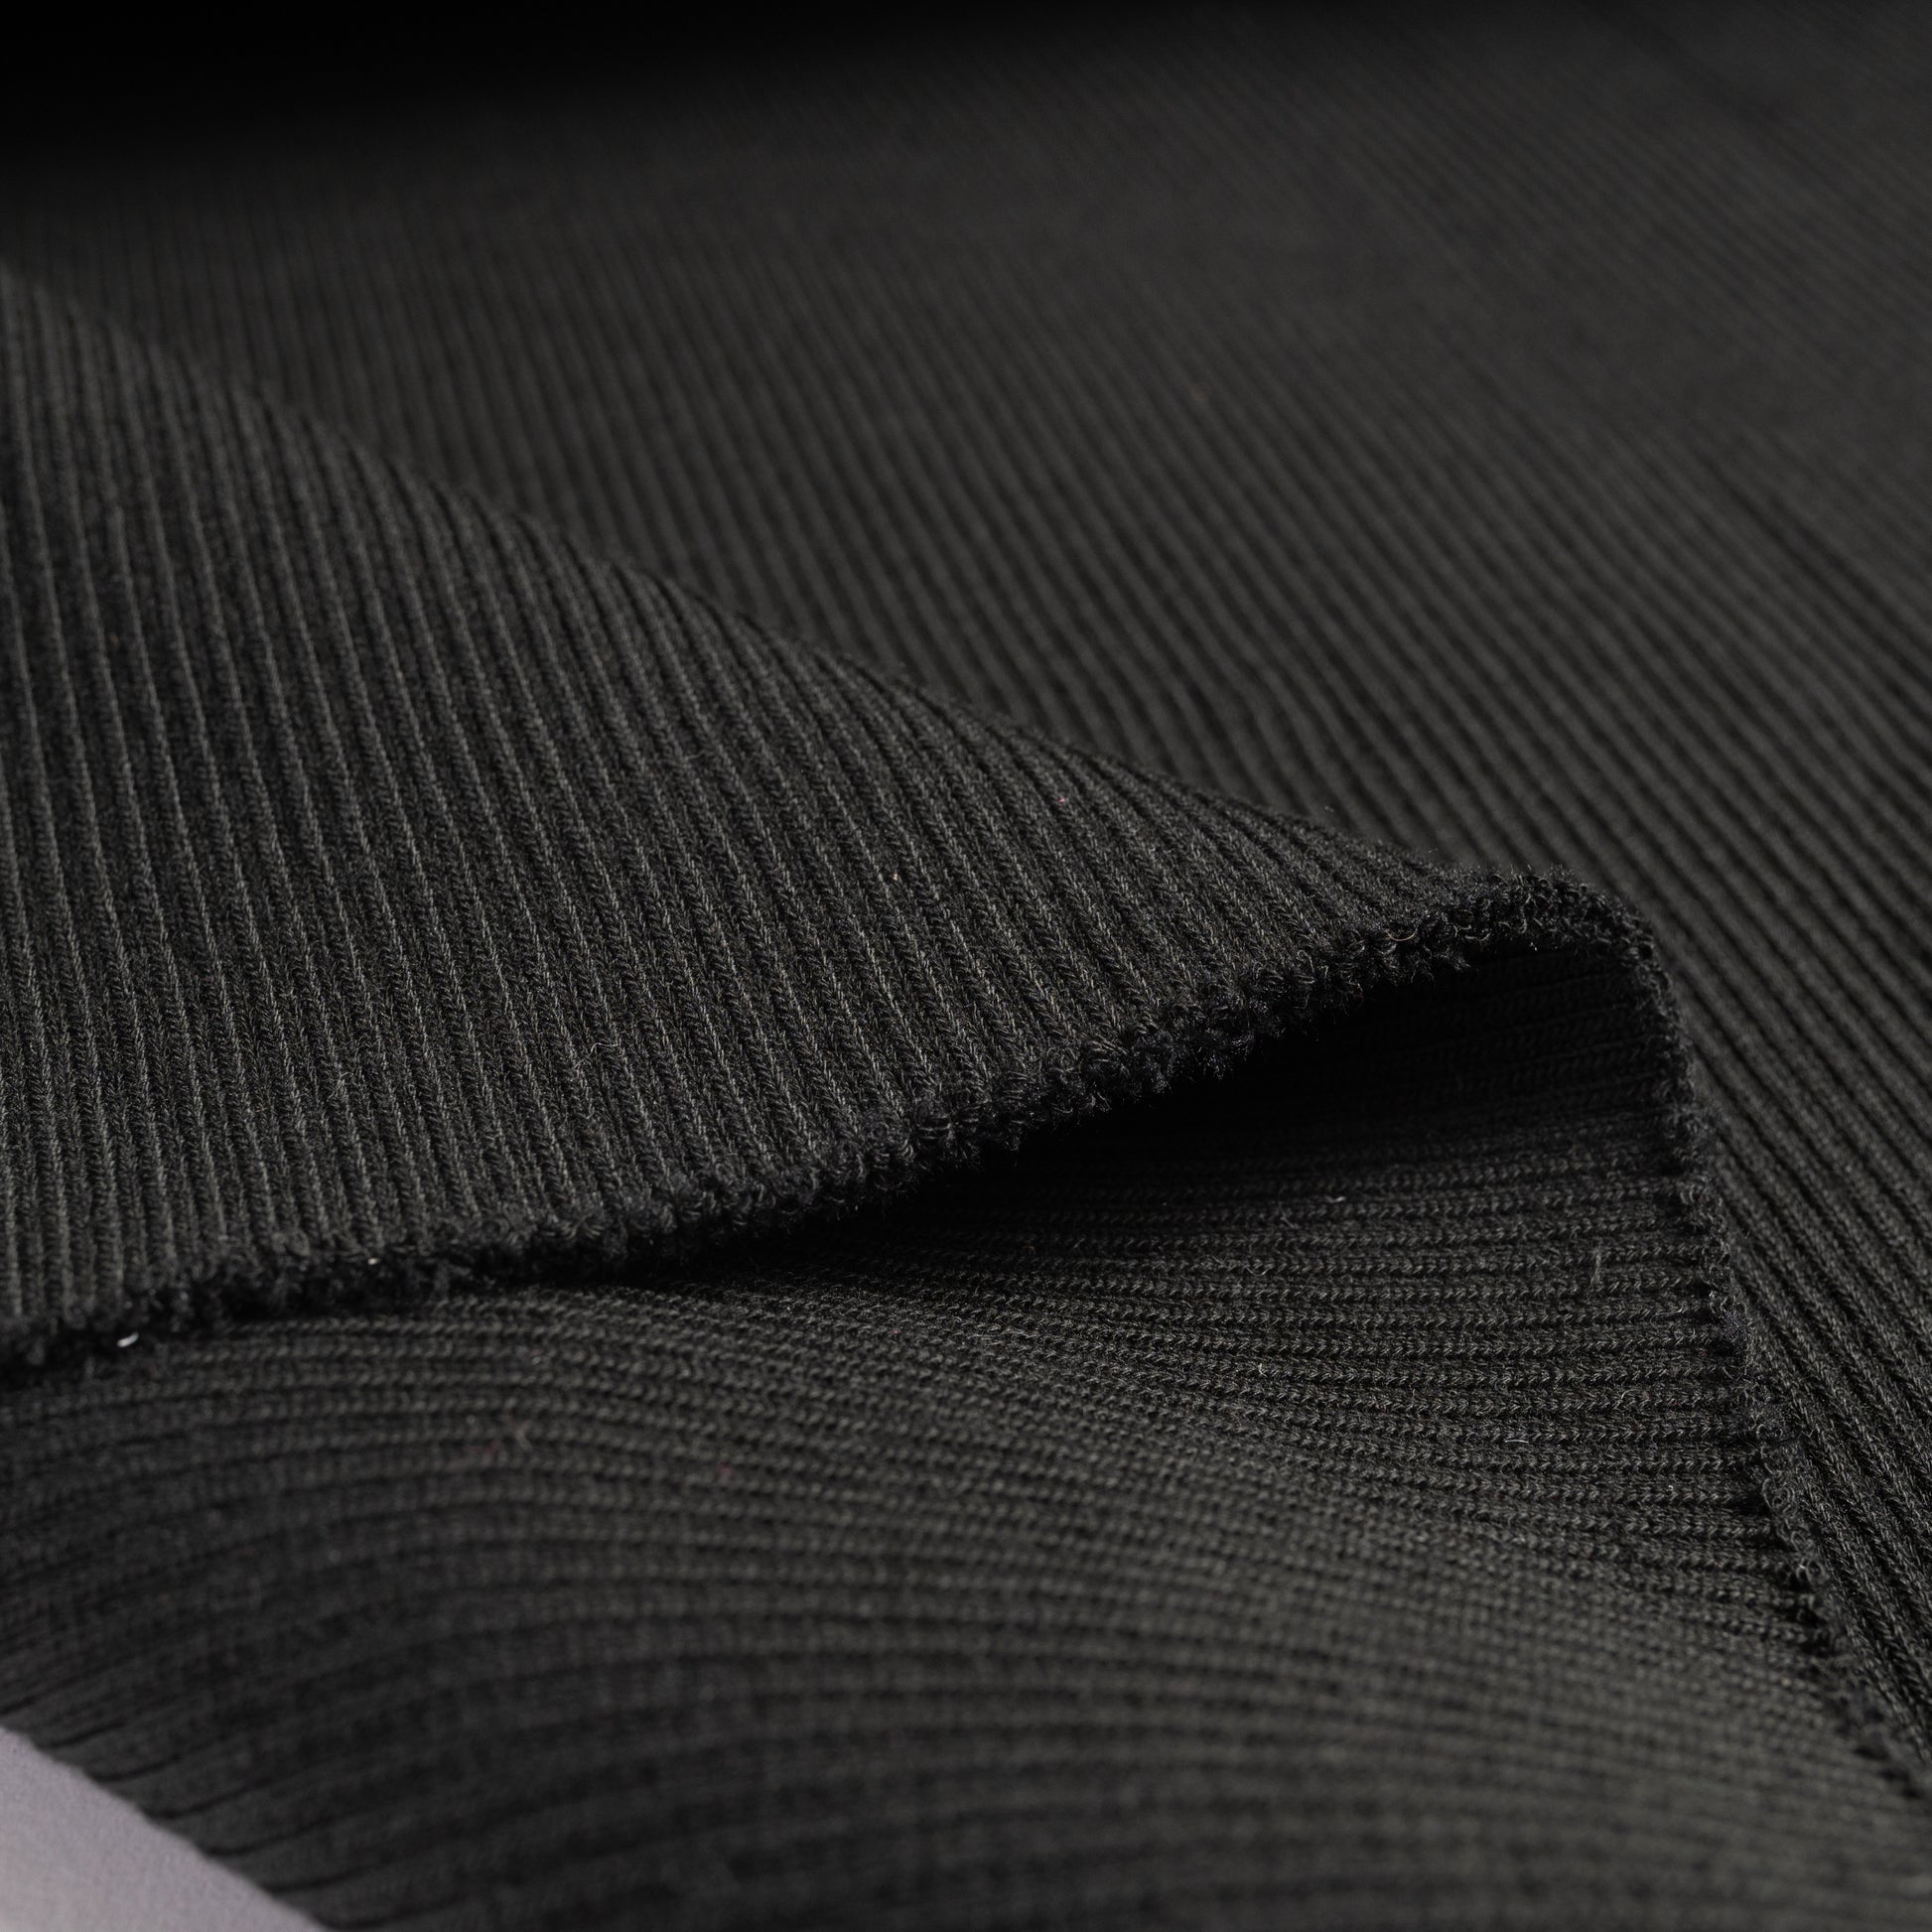 Rib Knit - 2x2 - black, detail